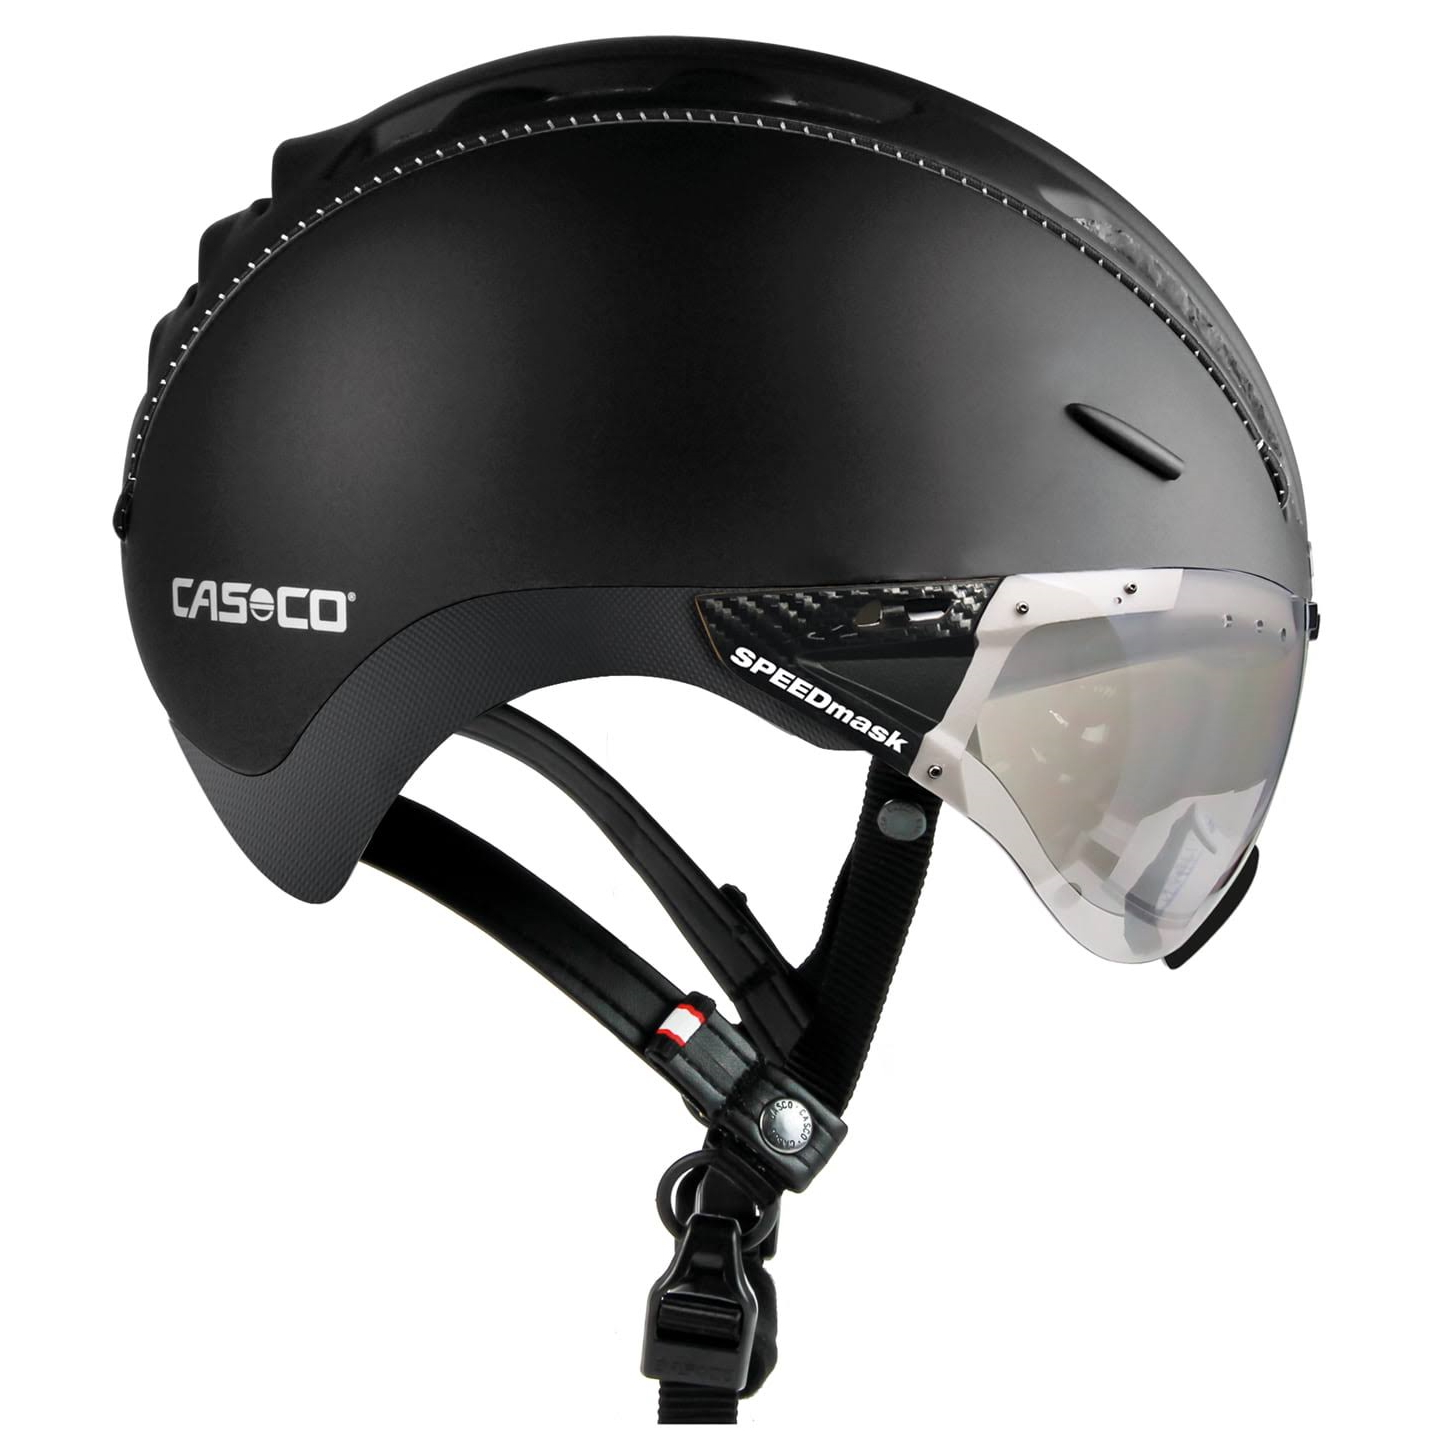 Produktbild von Casco Roadster Plus Helm - schwarz matt